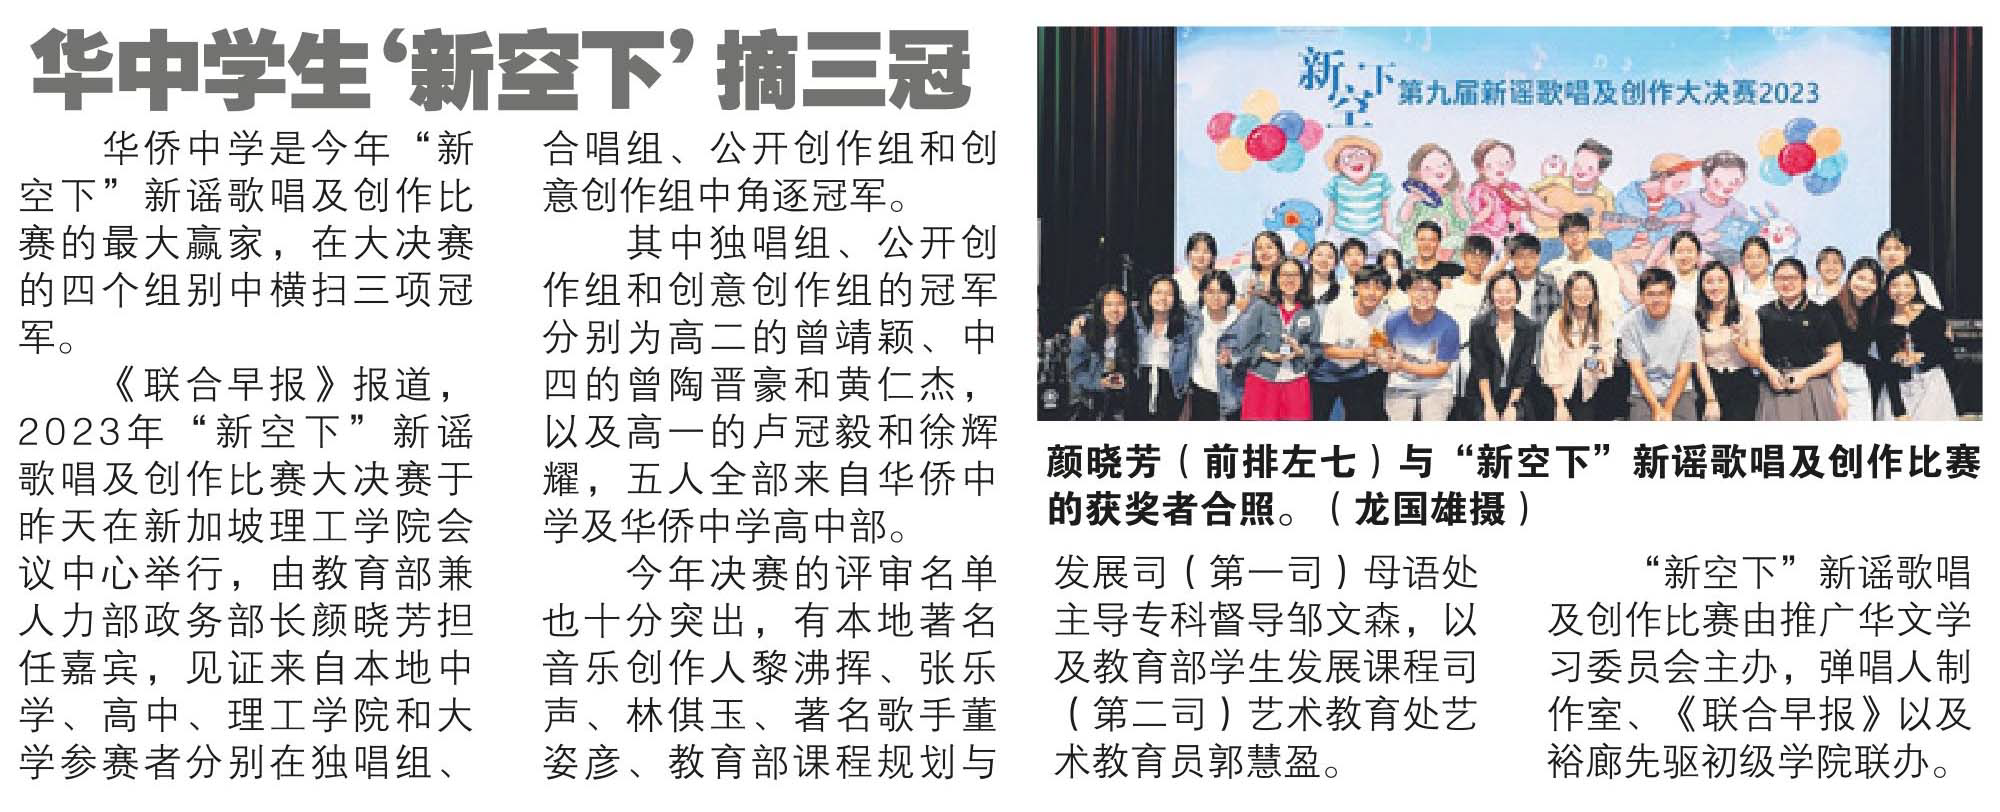 SM - Hwa Chong students won 3 champion awards at Xinyao Competition (30 July)